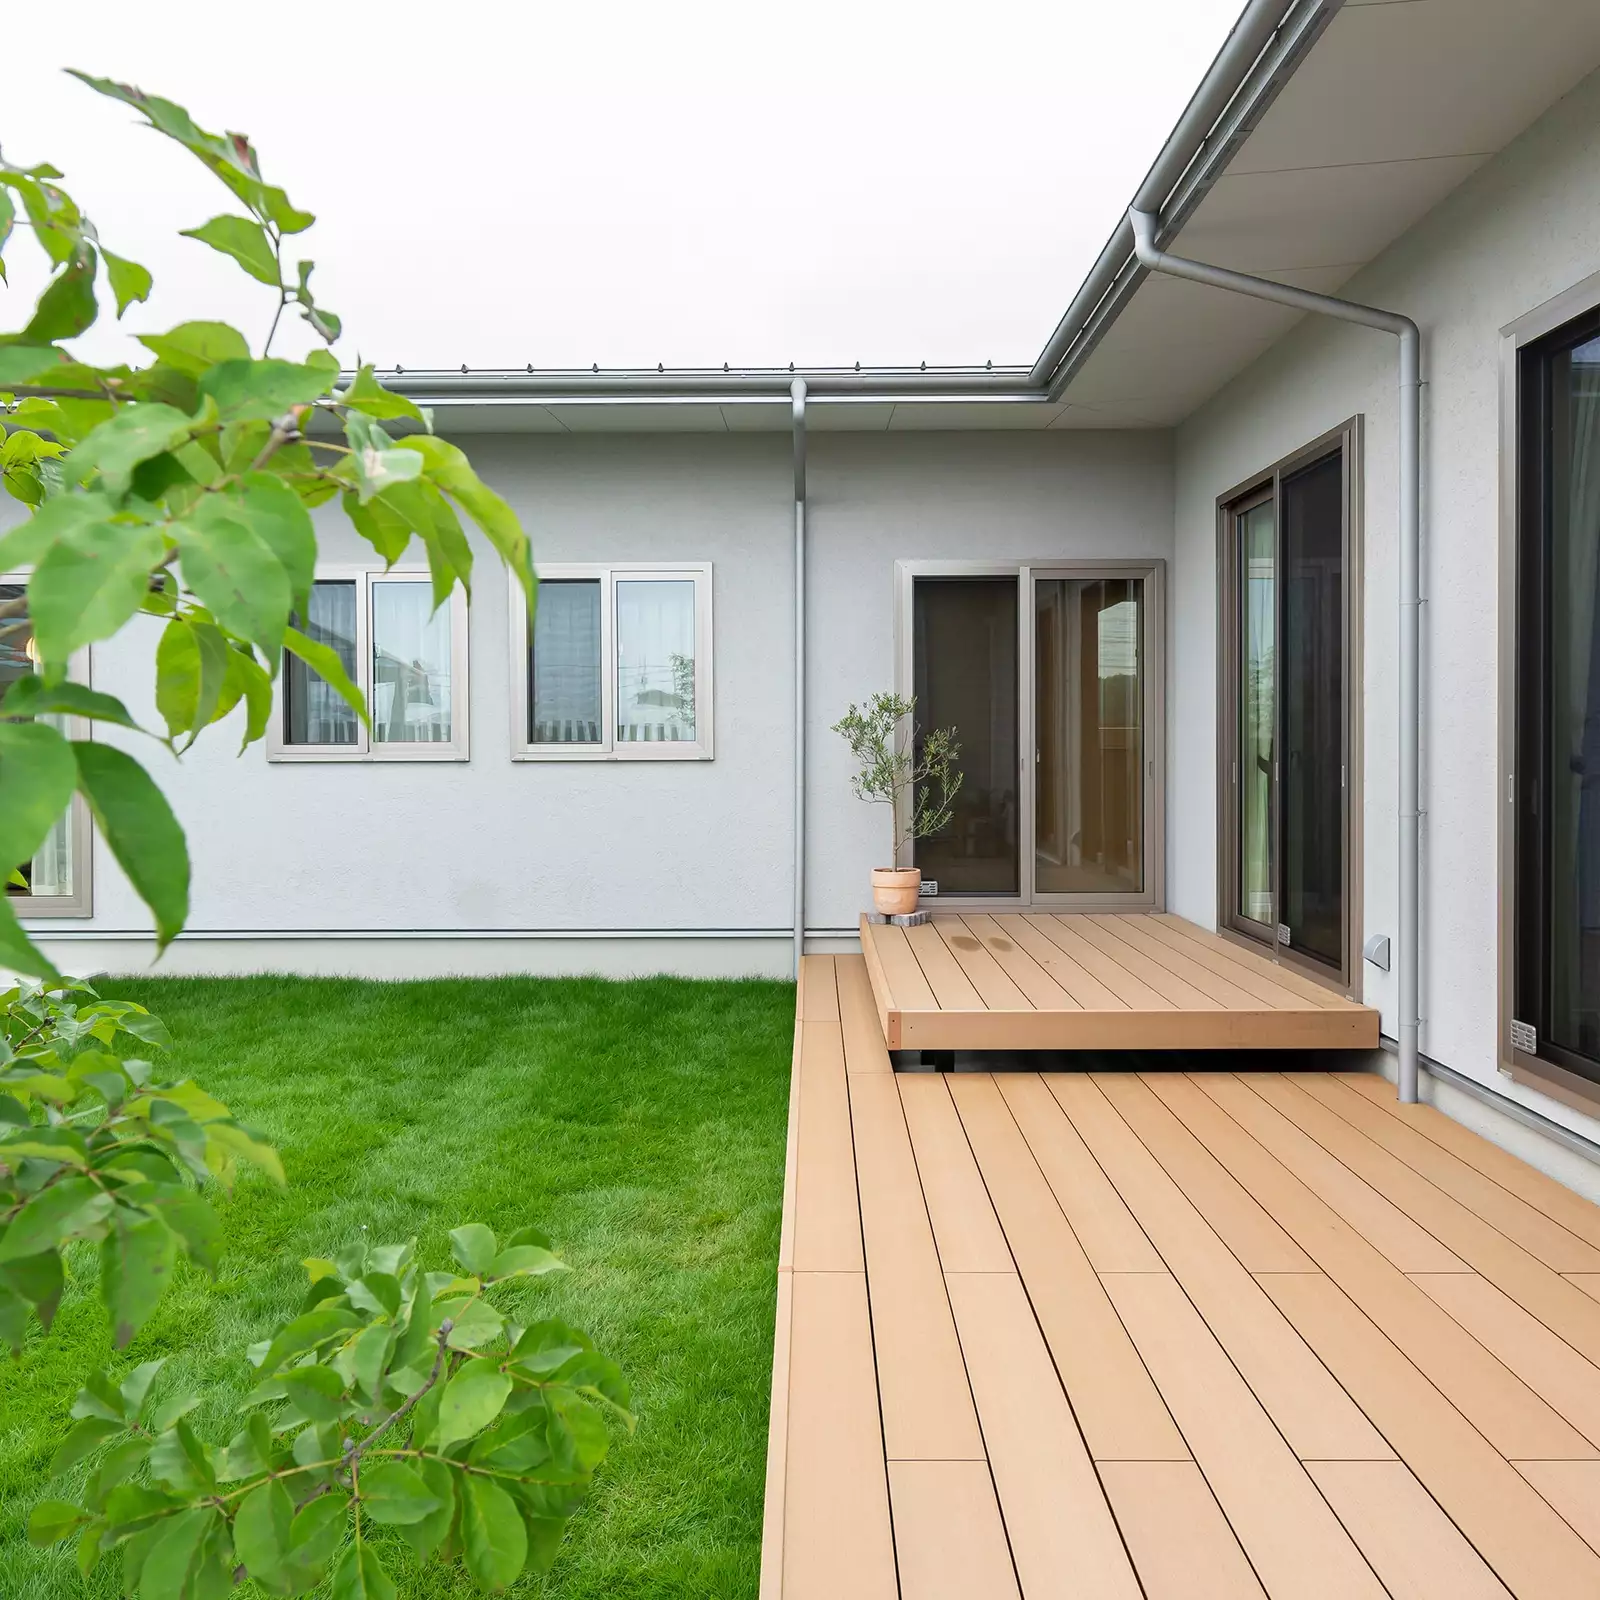 R+houseの物件の庭の写真です。左に芝生で覆われた庭、右に大きなウッドデッキがあります。